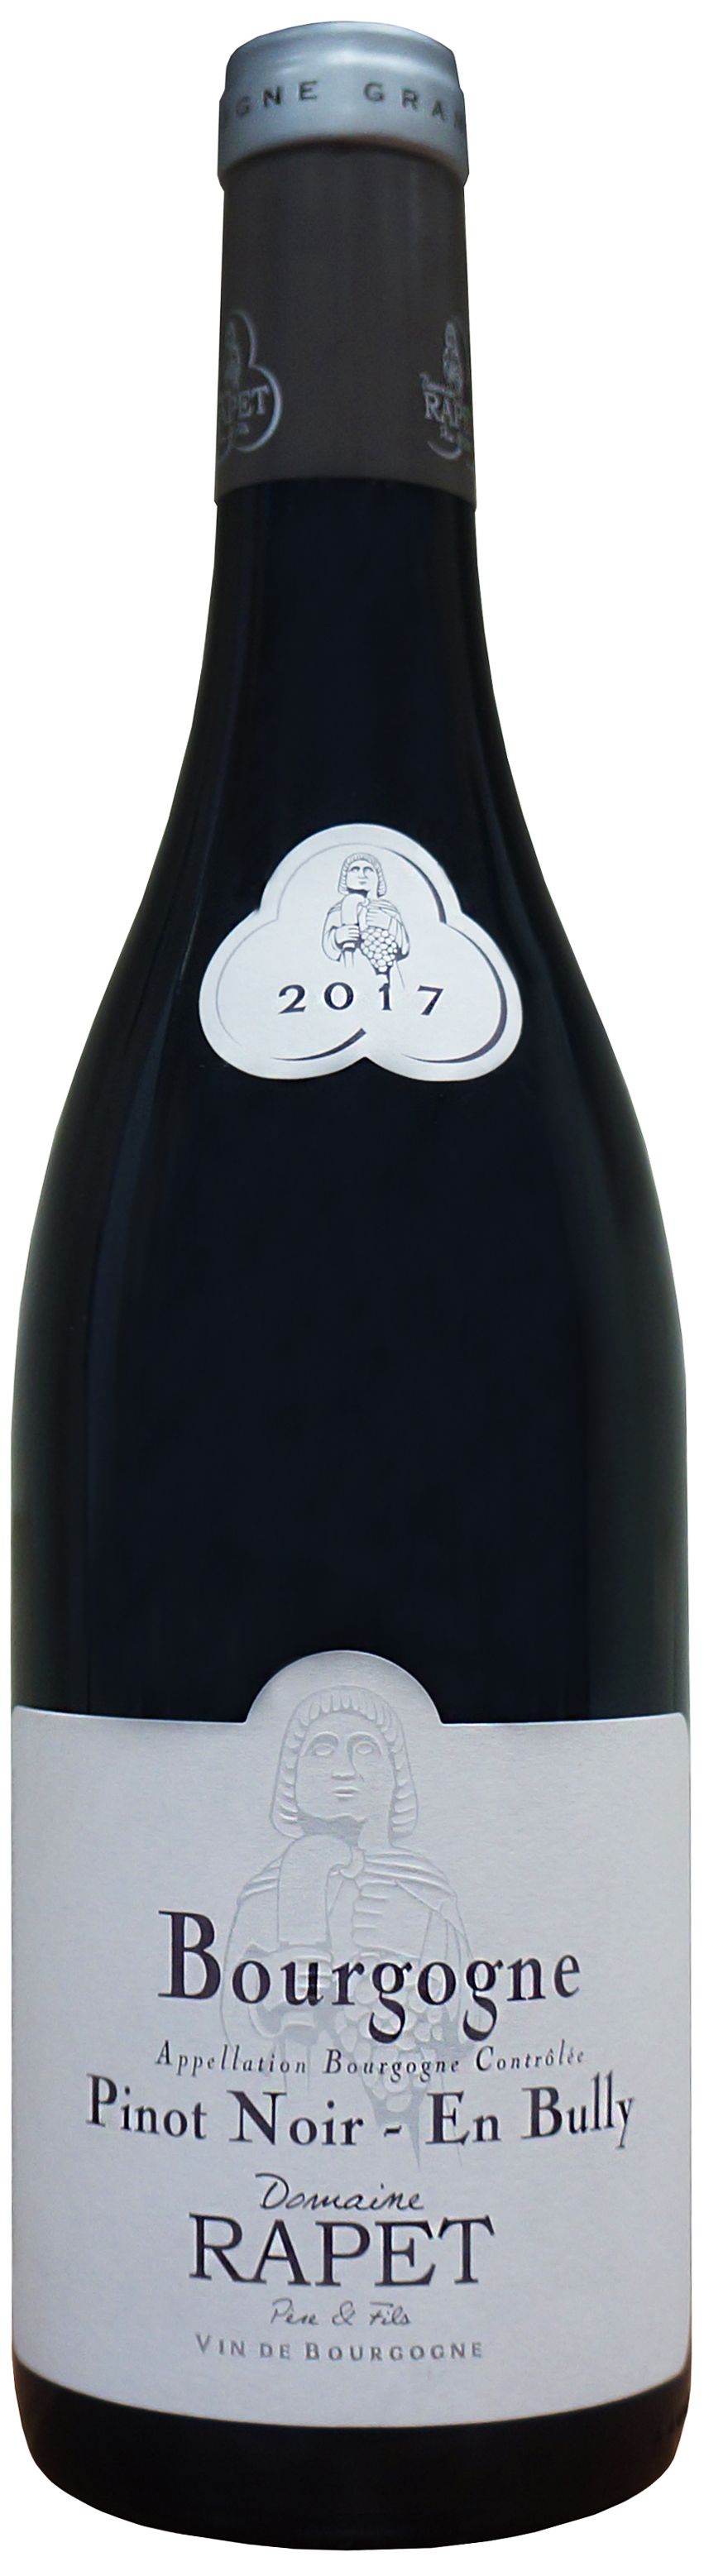 Domaine Rapet, Bourgogne Pinot Noir En Bully, 2018